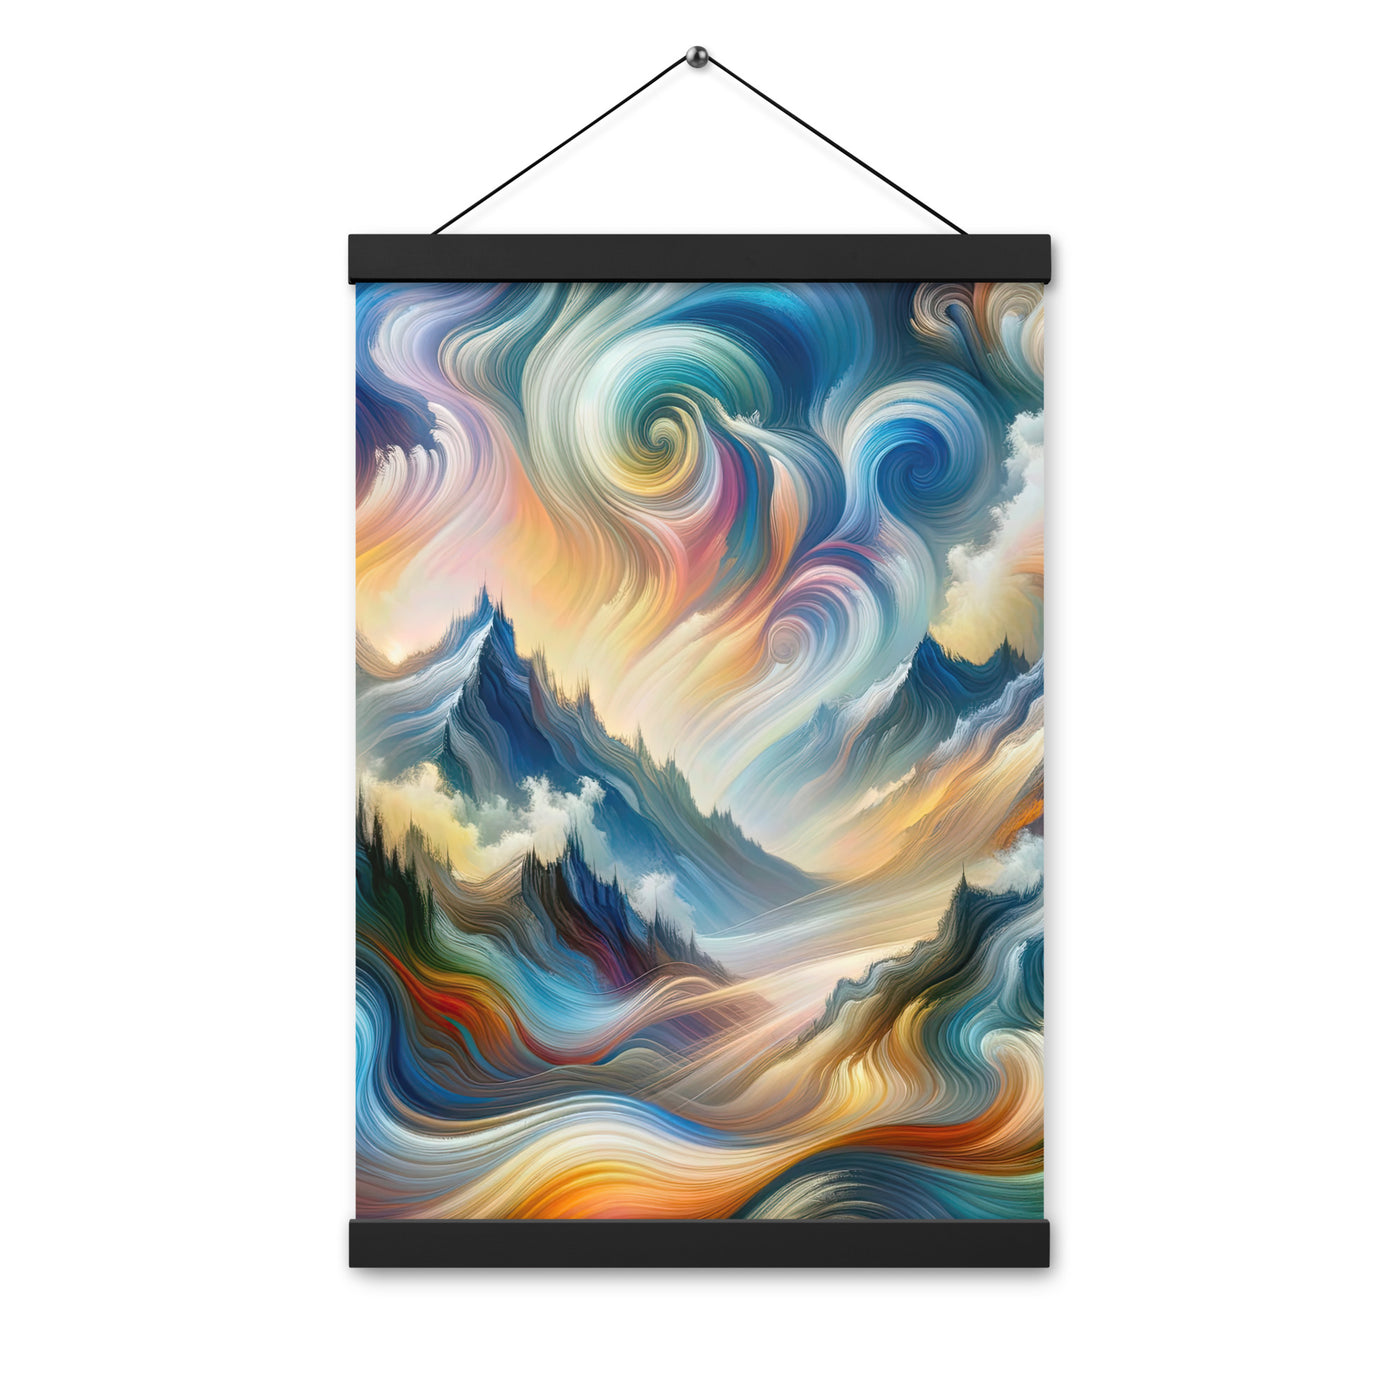 Ätherische schöne Alpen in lebendigen Farbwirbeln - Abstrakte Berge - Premium Poster mit Aufhängung berge xxx yyy zzz 30.5 x 45.7 cm